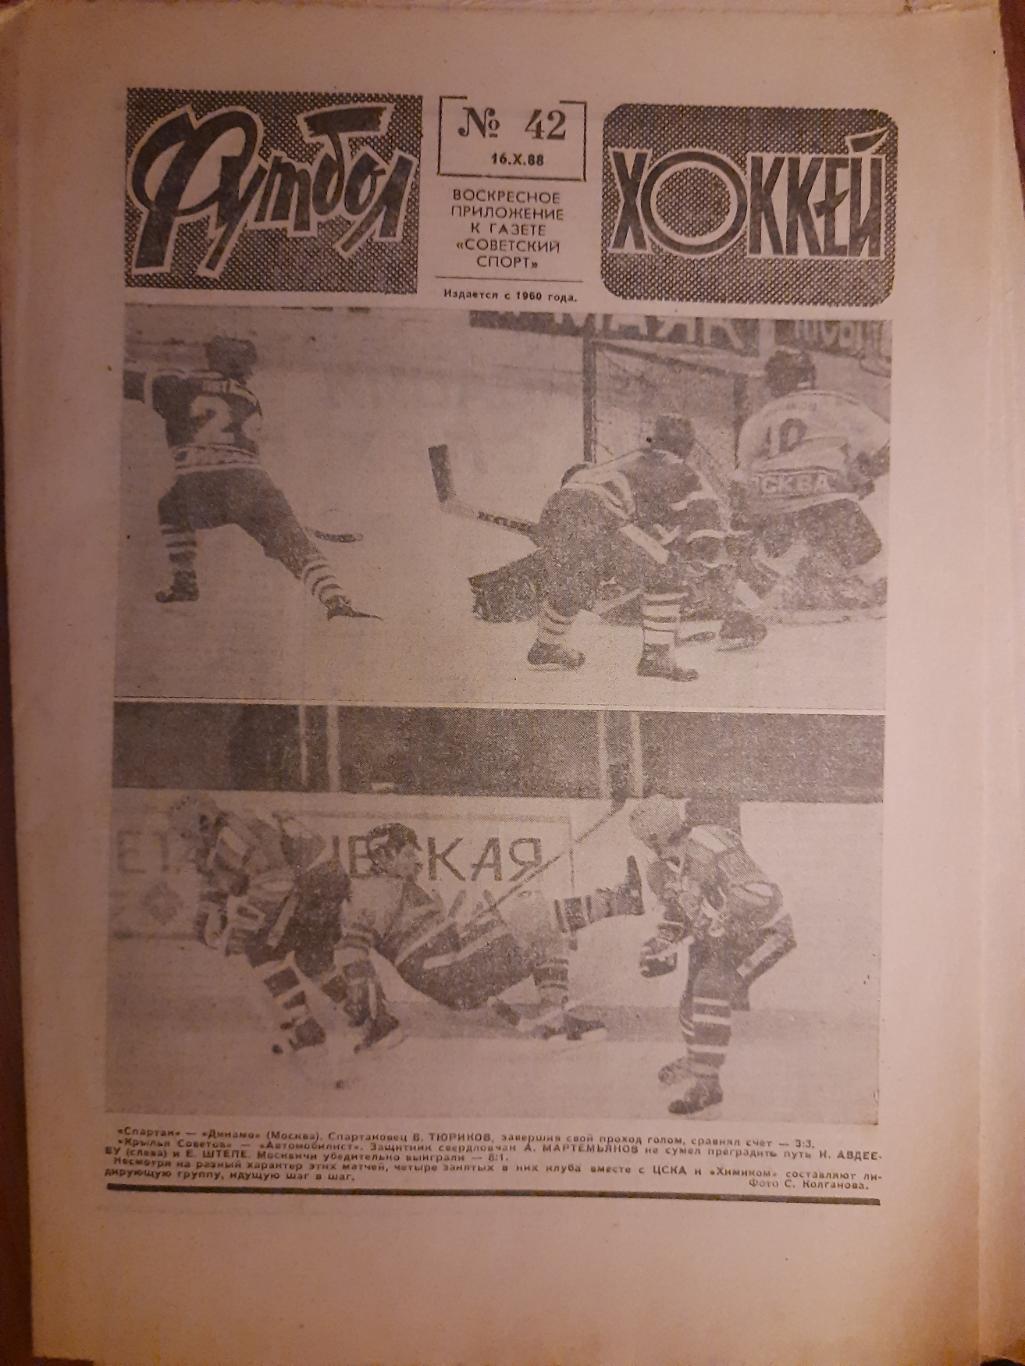 еженедельник футбол-хоккей #42,1988